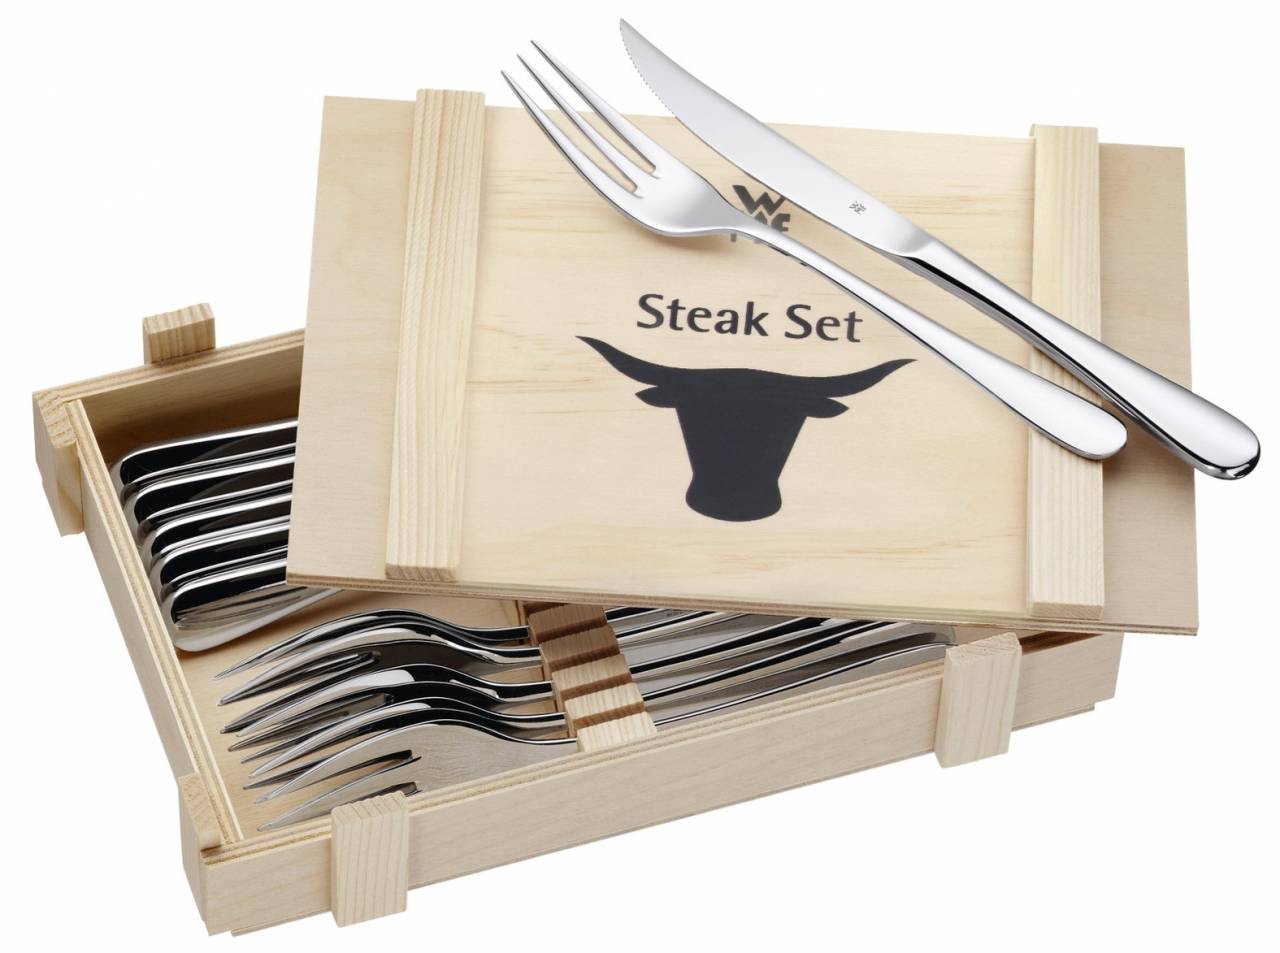 steakove-pribory-v-drevene-krabici-12ks-www.wmf.cz-4.jpg